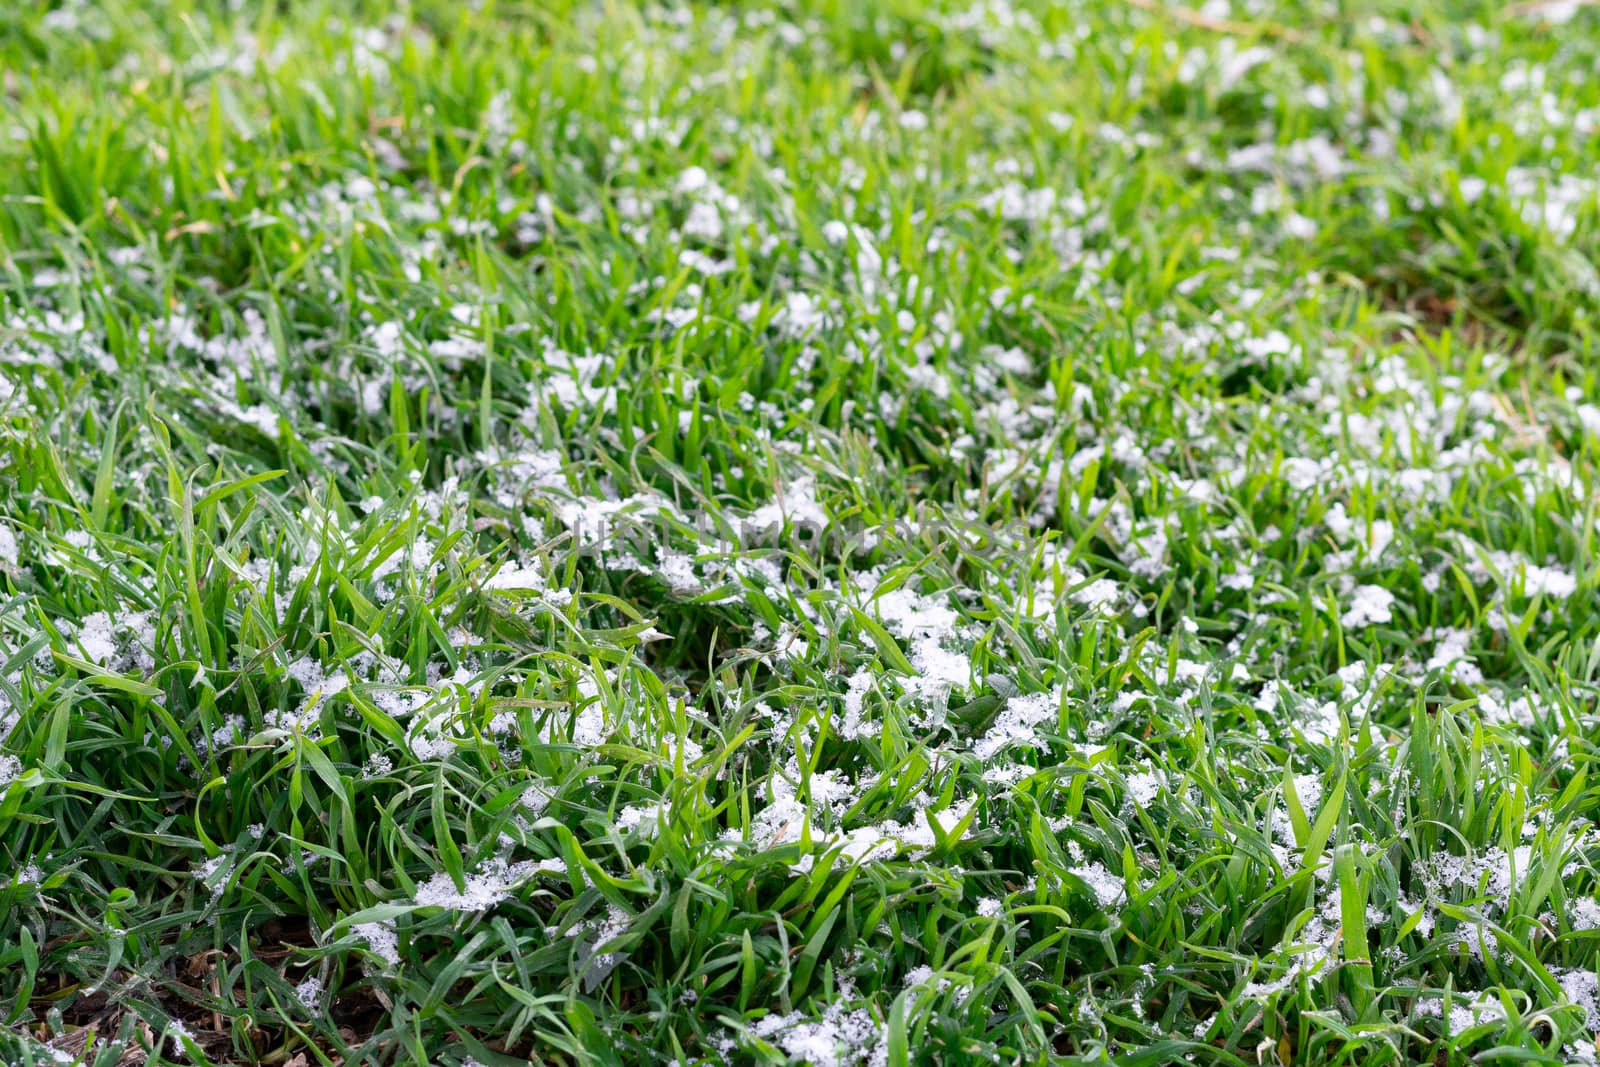 green grass in the snow by Serhii_Voroshchuk